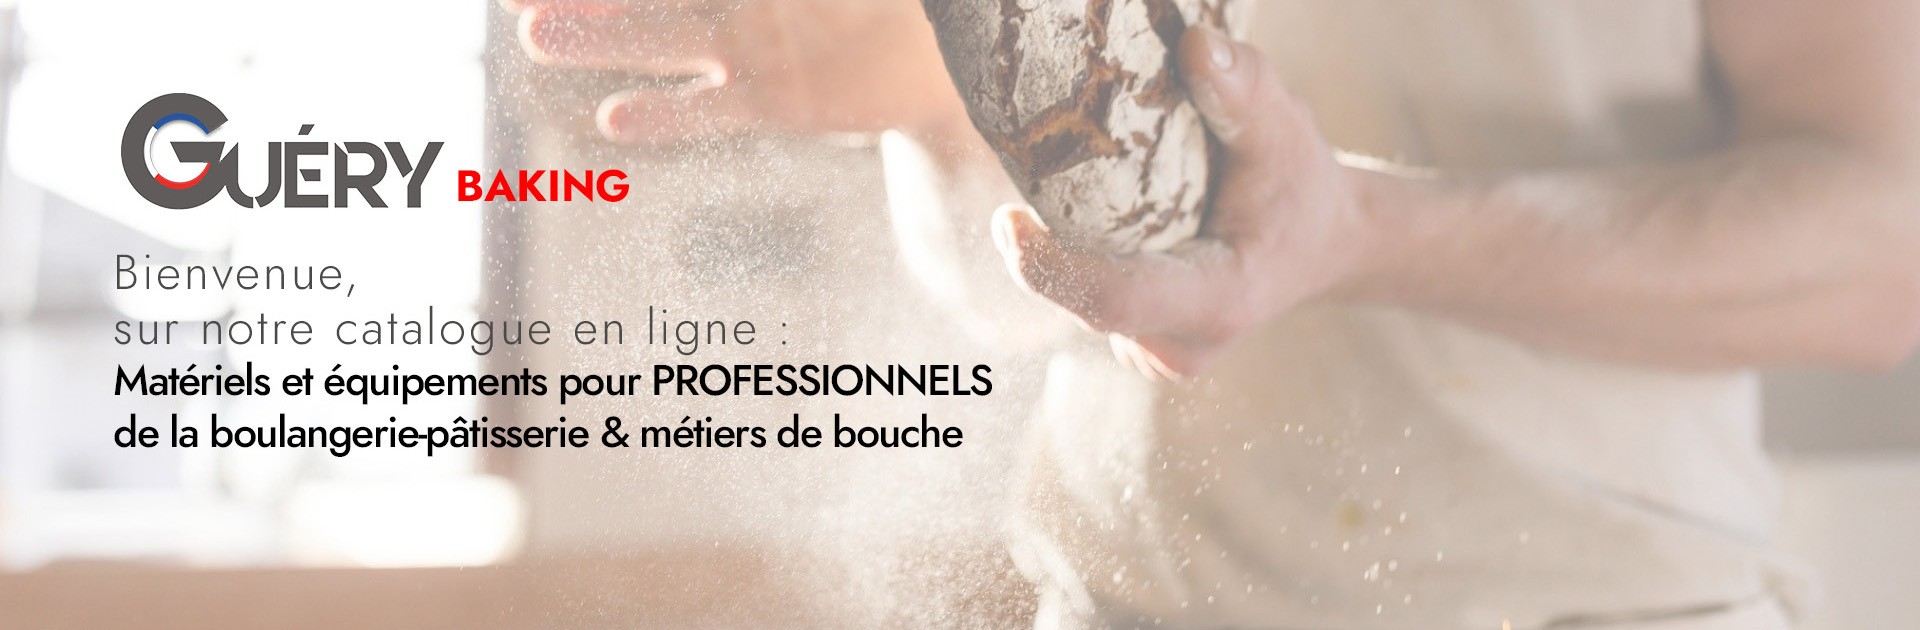 Catalogue Boulangerie-Pâtissierie BAKING Guery